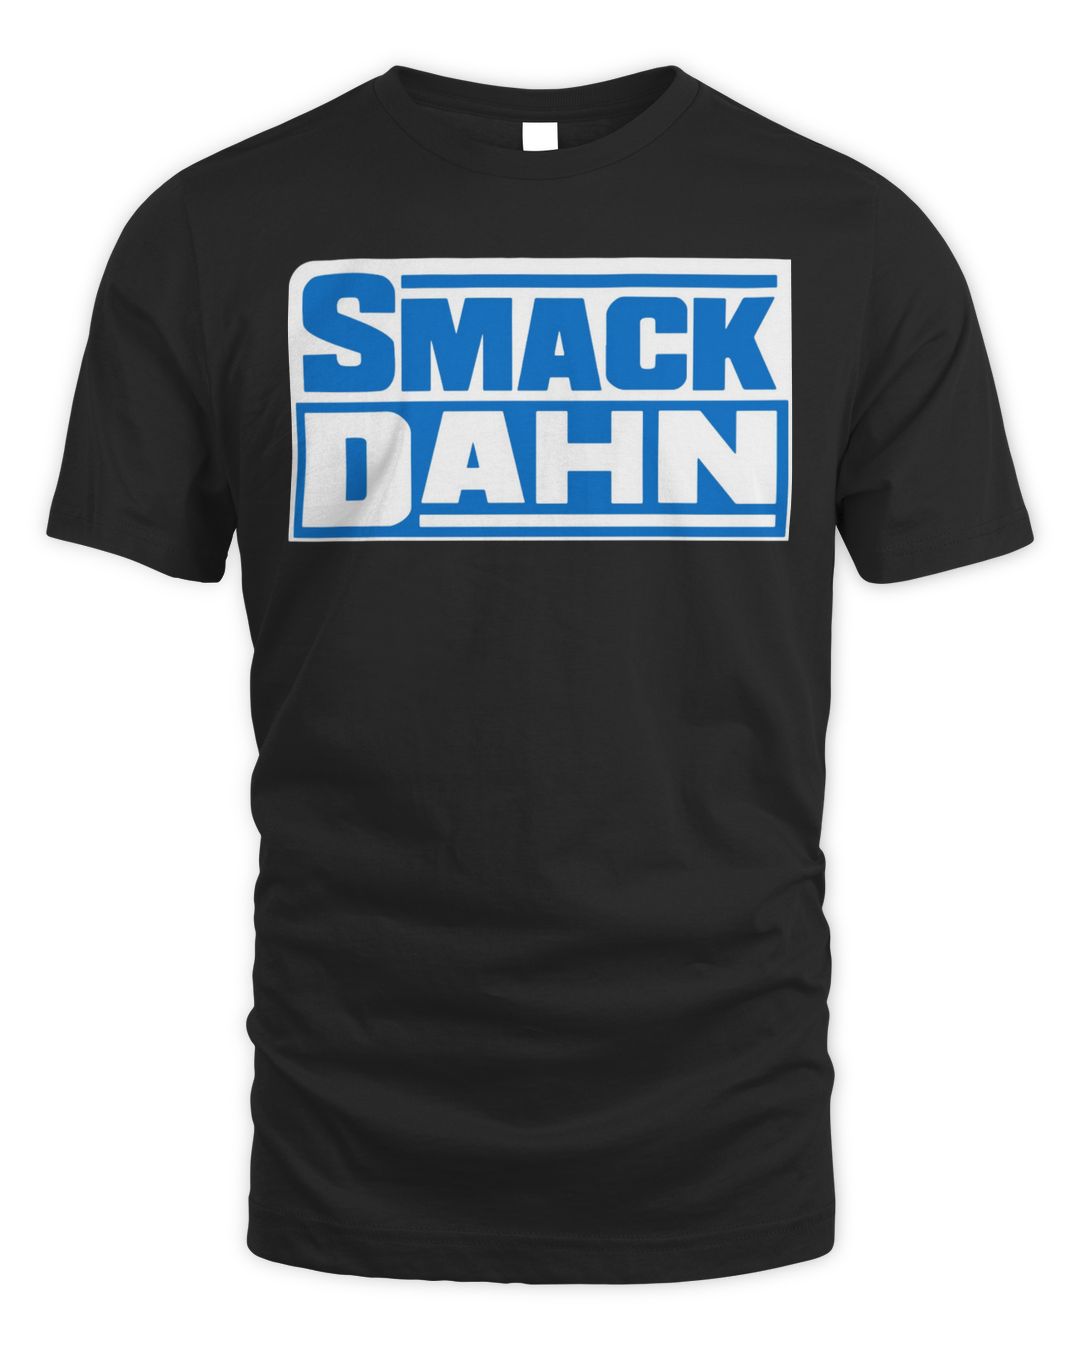 Pat Mcafee Merch Smack Dahn Shirt